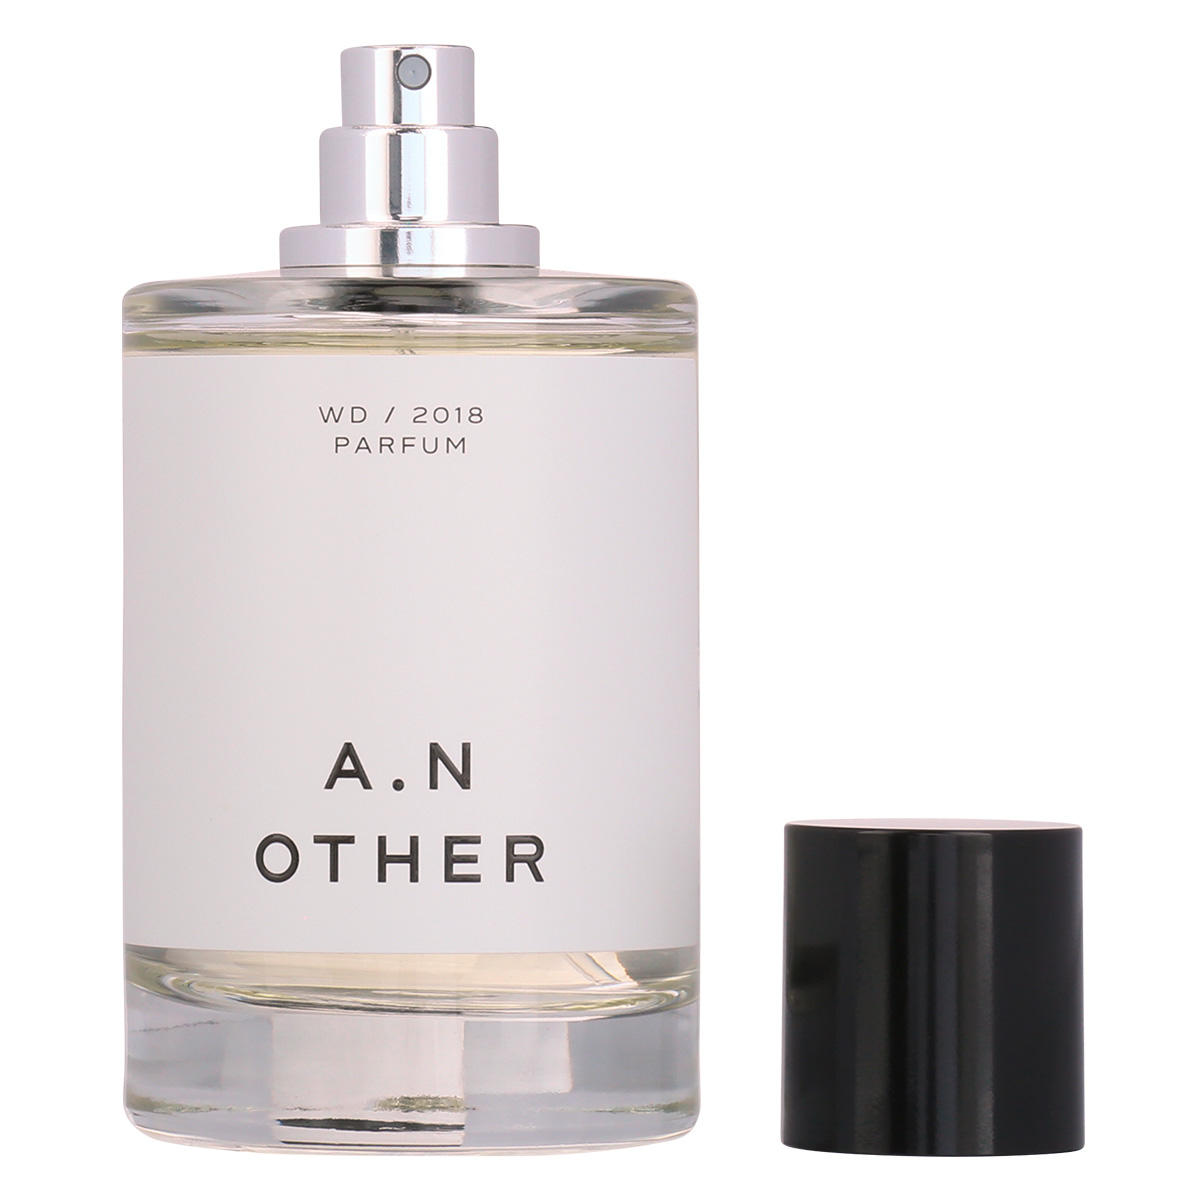 A.N OTHER WD/2018 Eau de Parfum 100 ml - 3